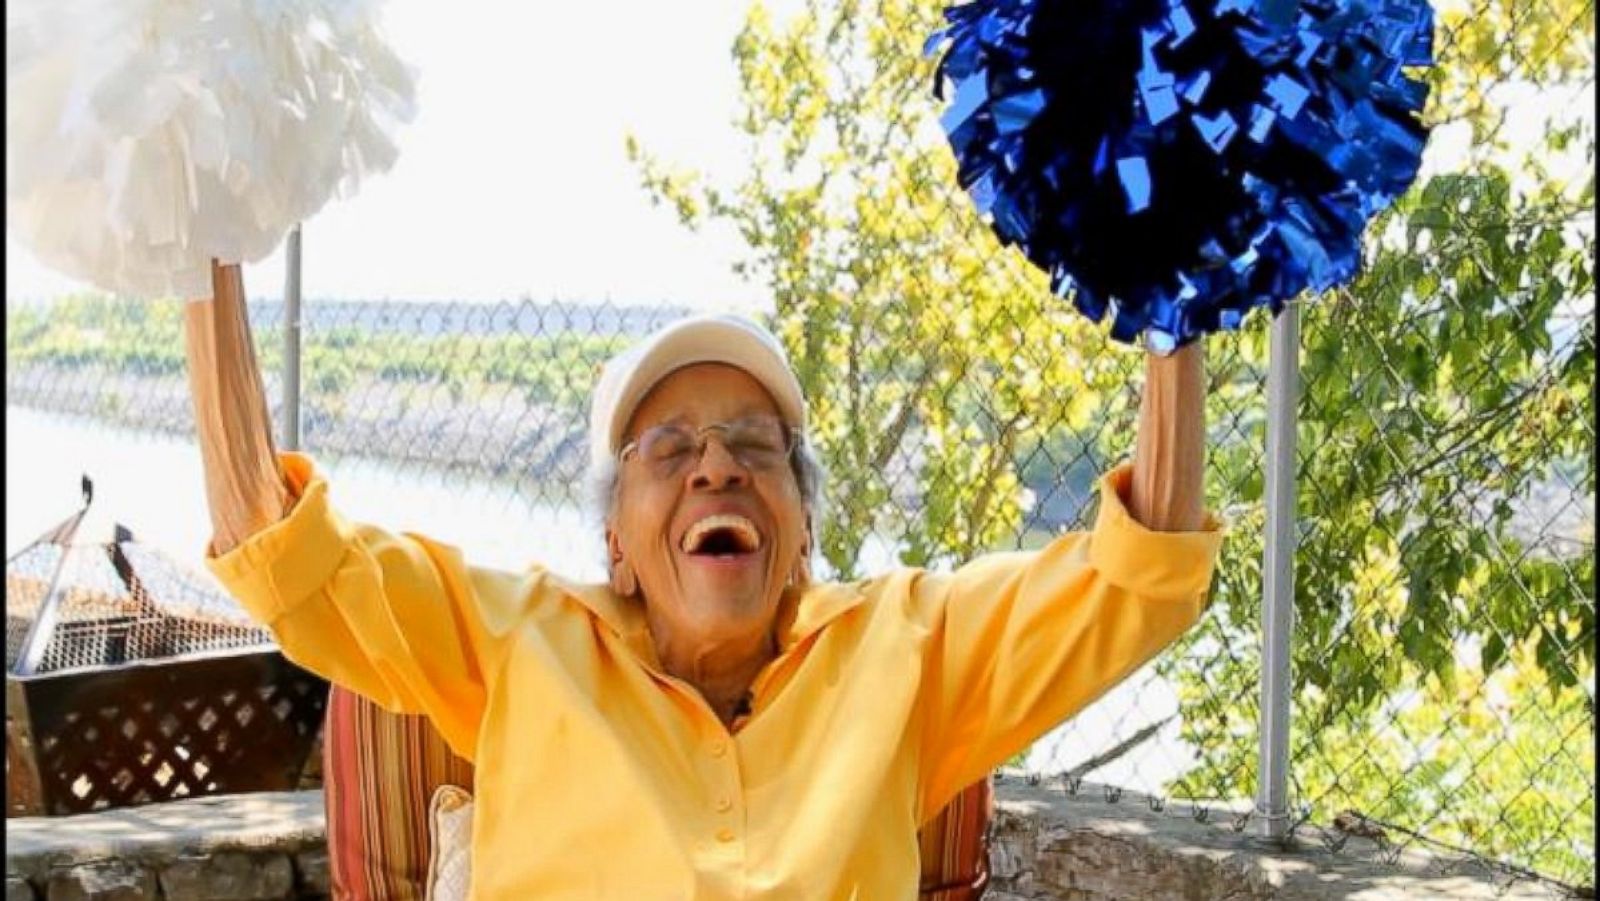 101-Year-Old Former Cheerleader Honored at TSU Homecoming